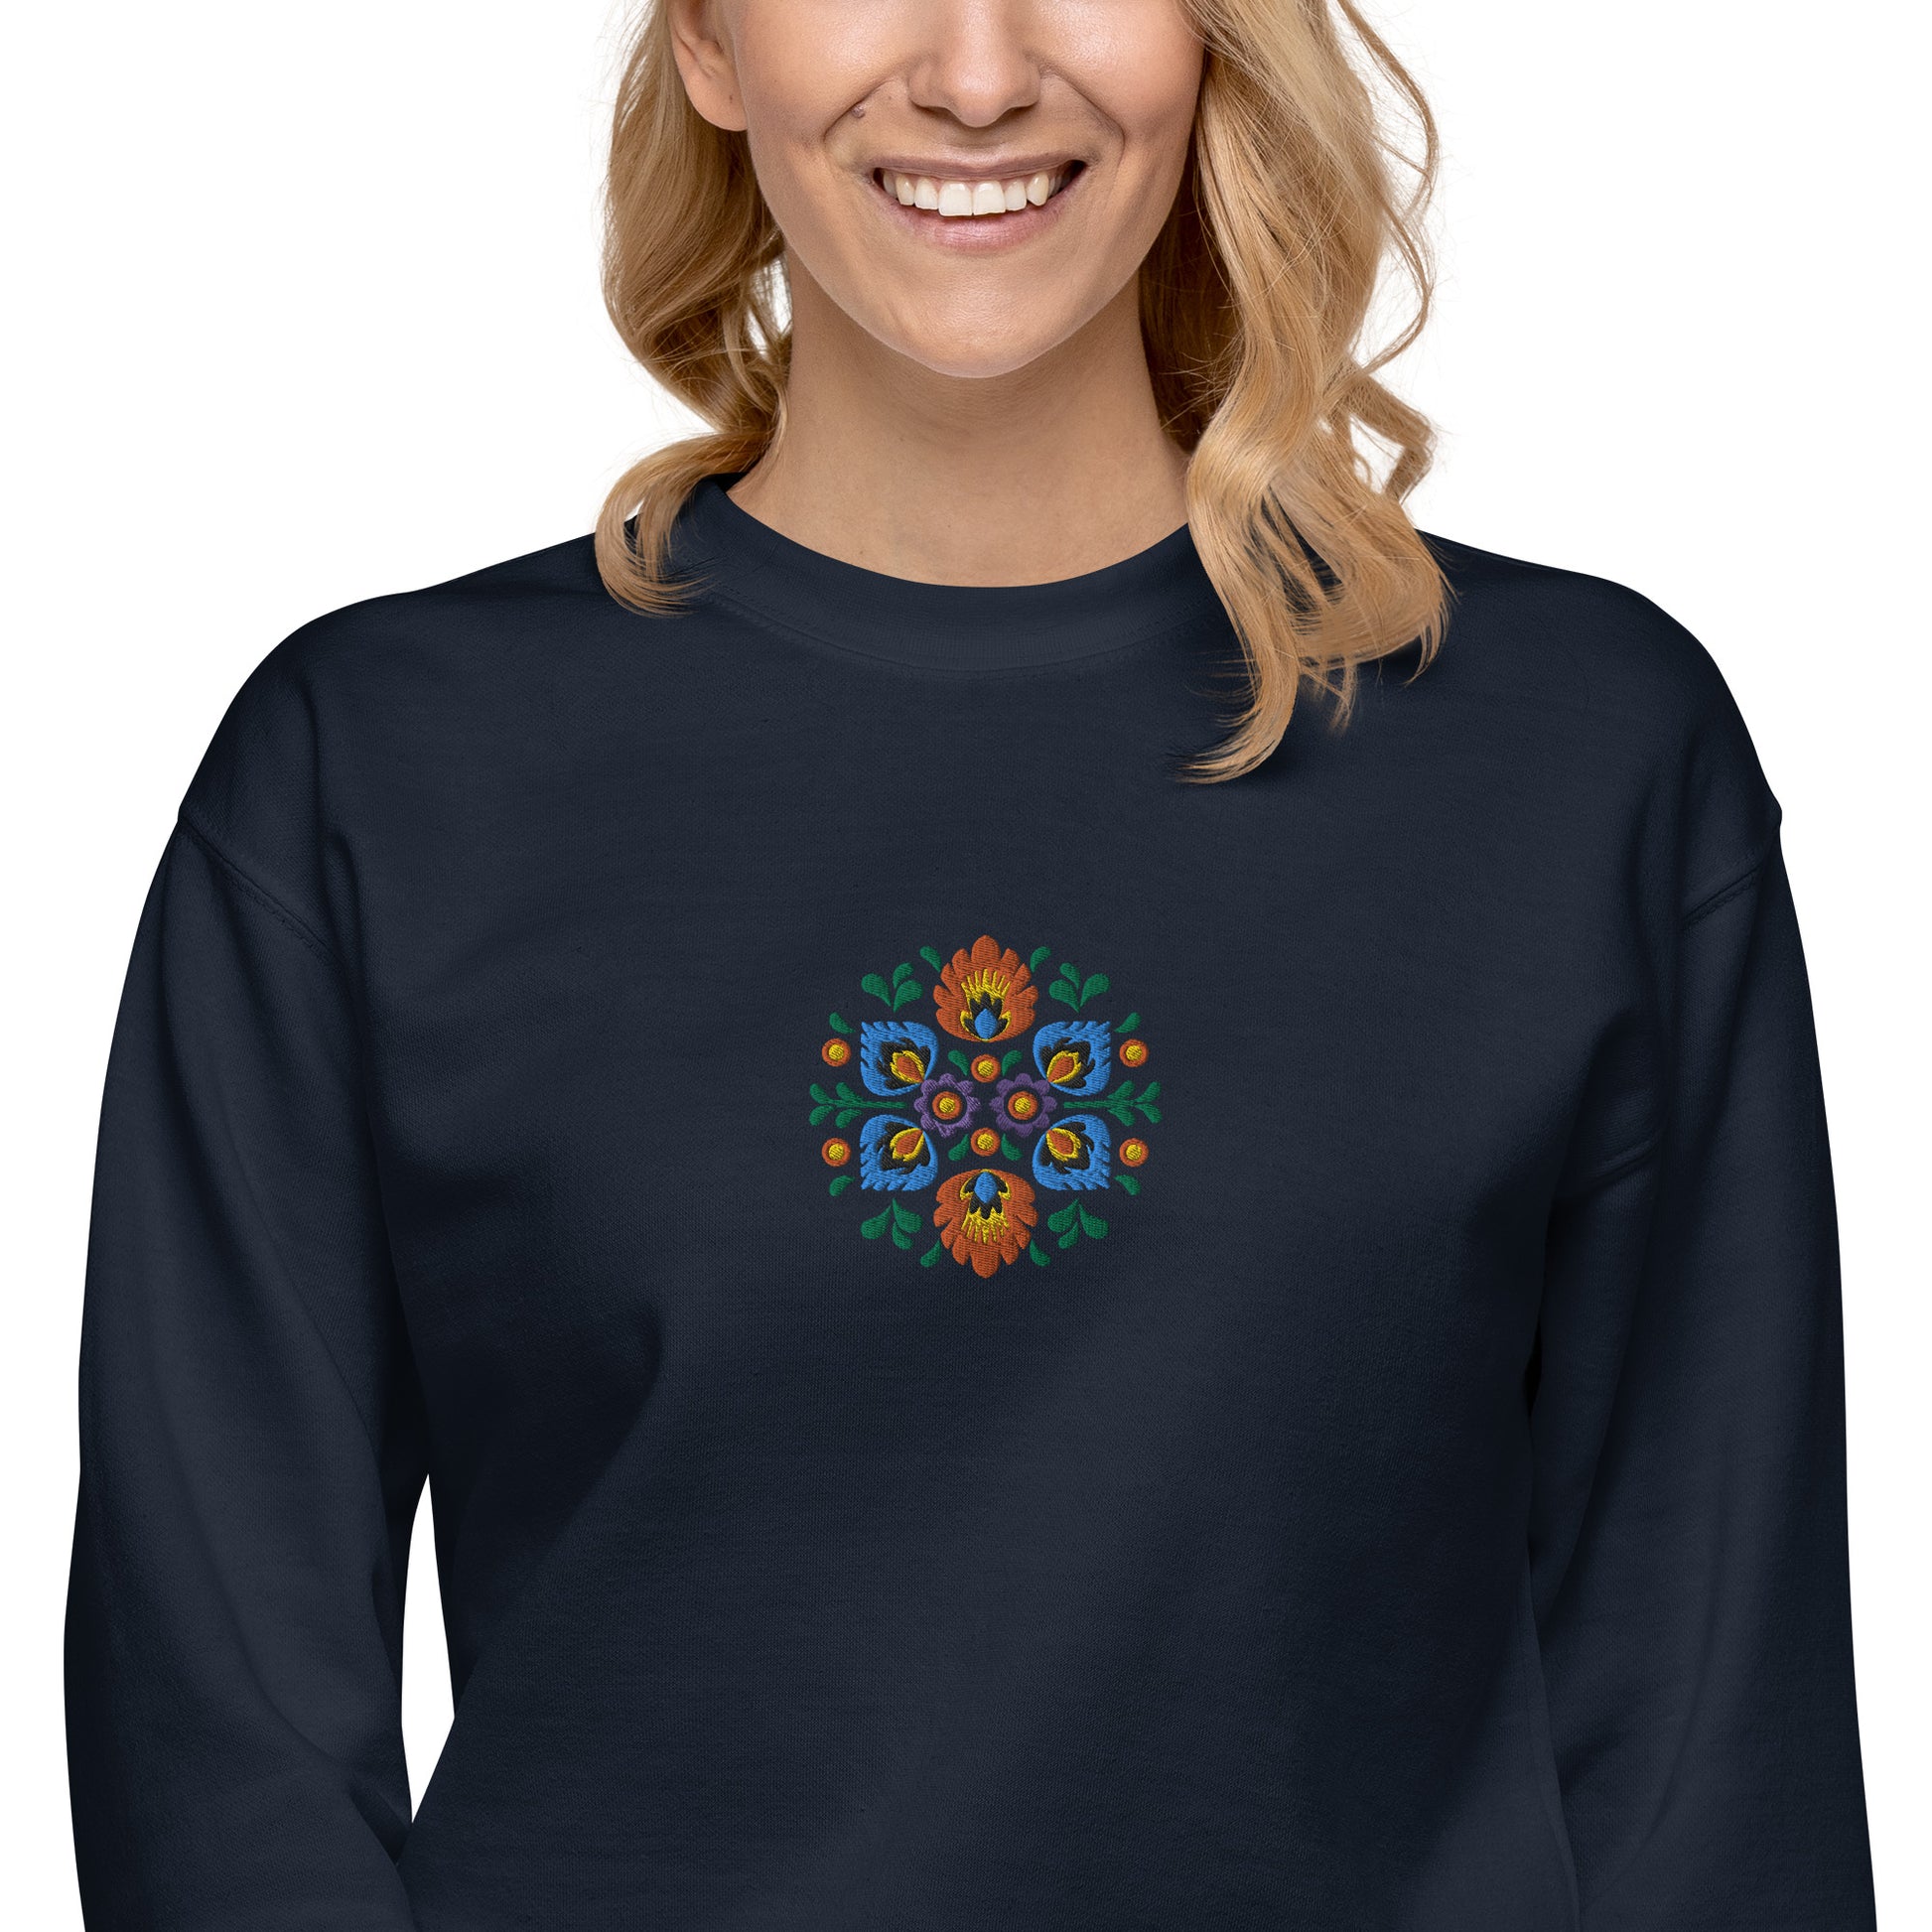 Polish Wycinanki Sweatshirt - Embroidered - The Global Wanderer